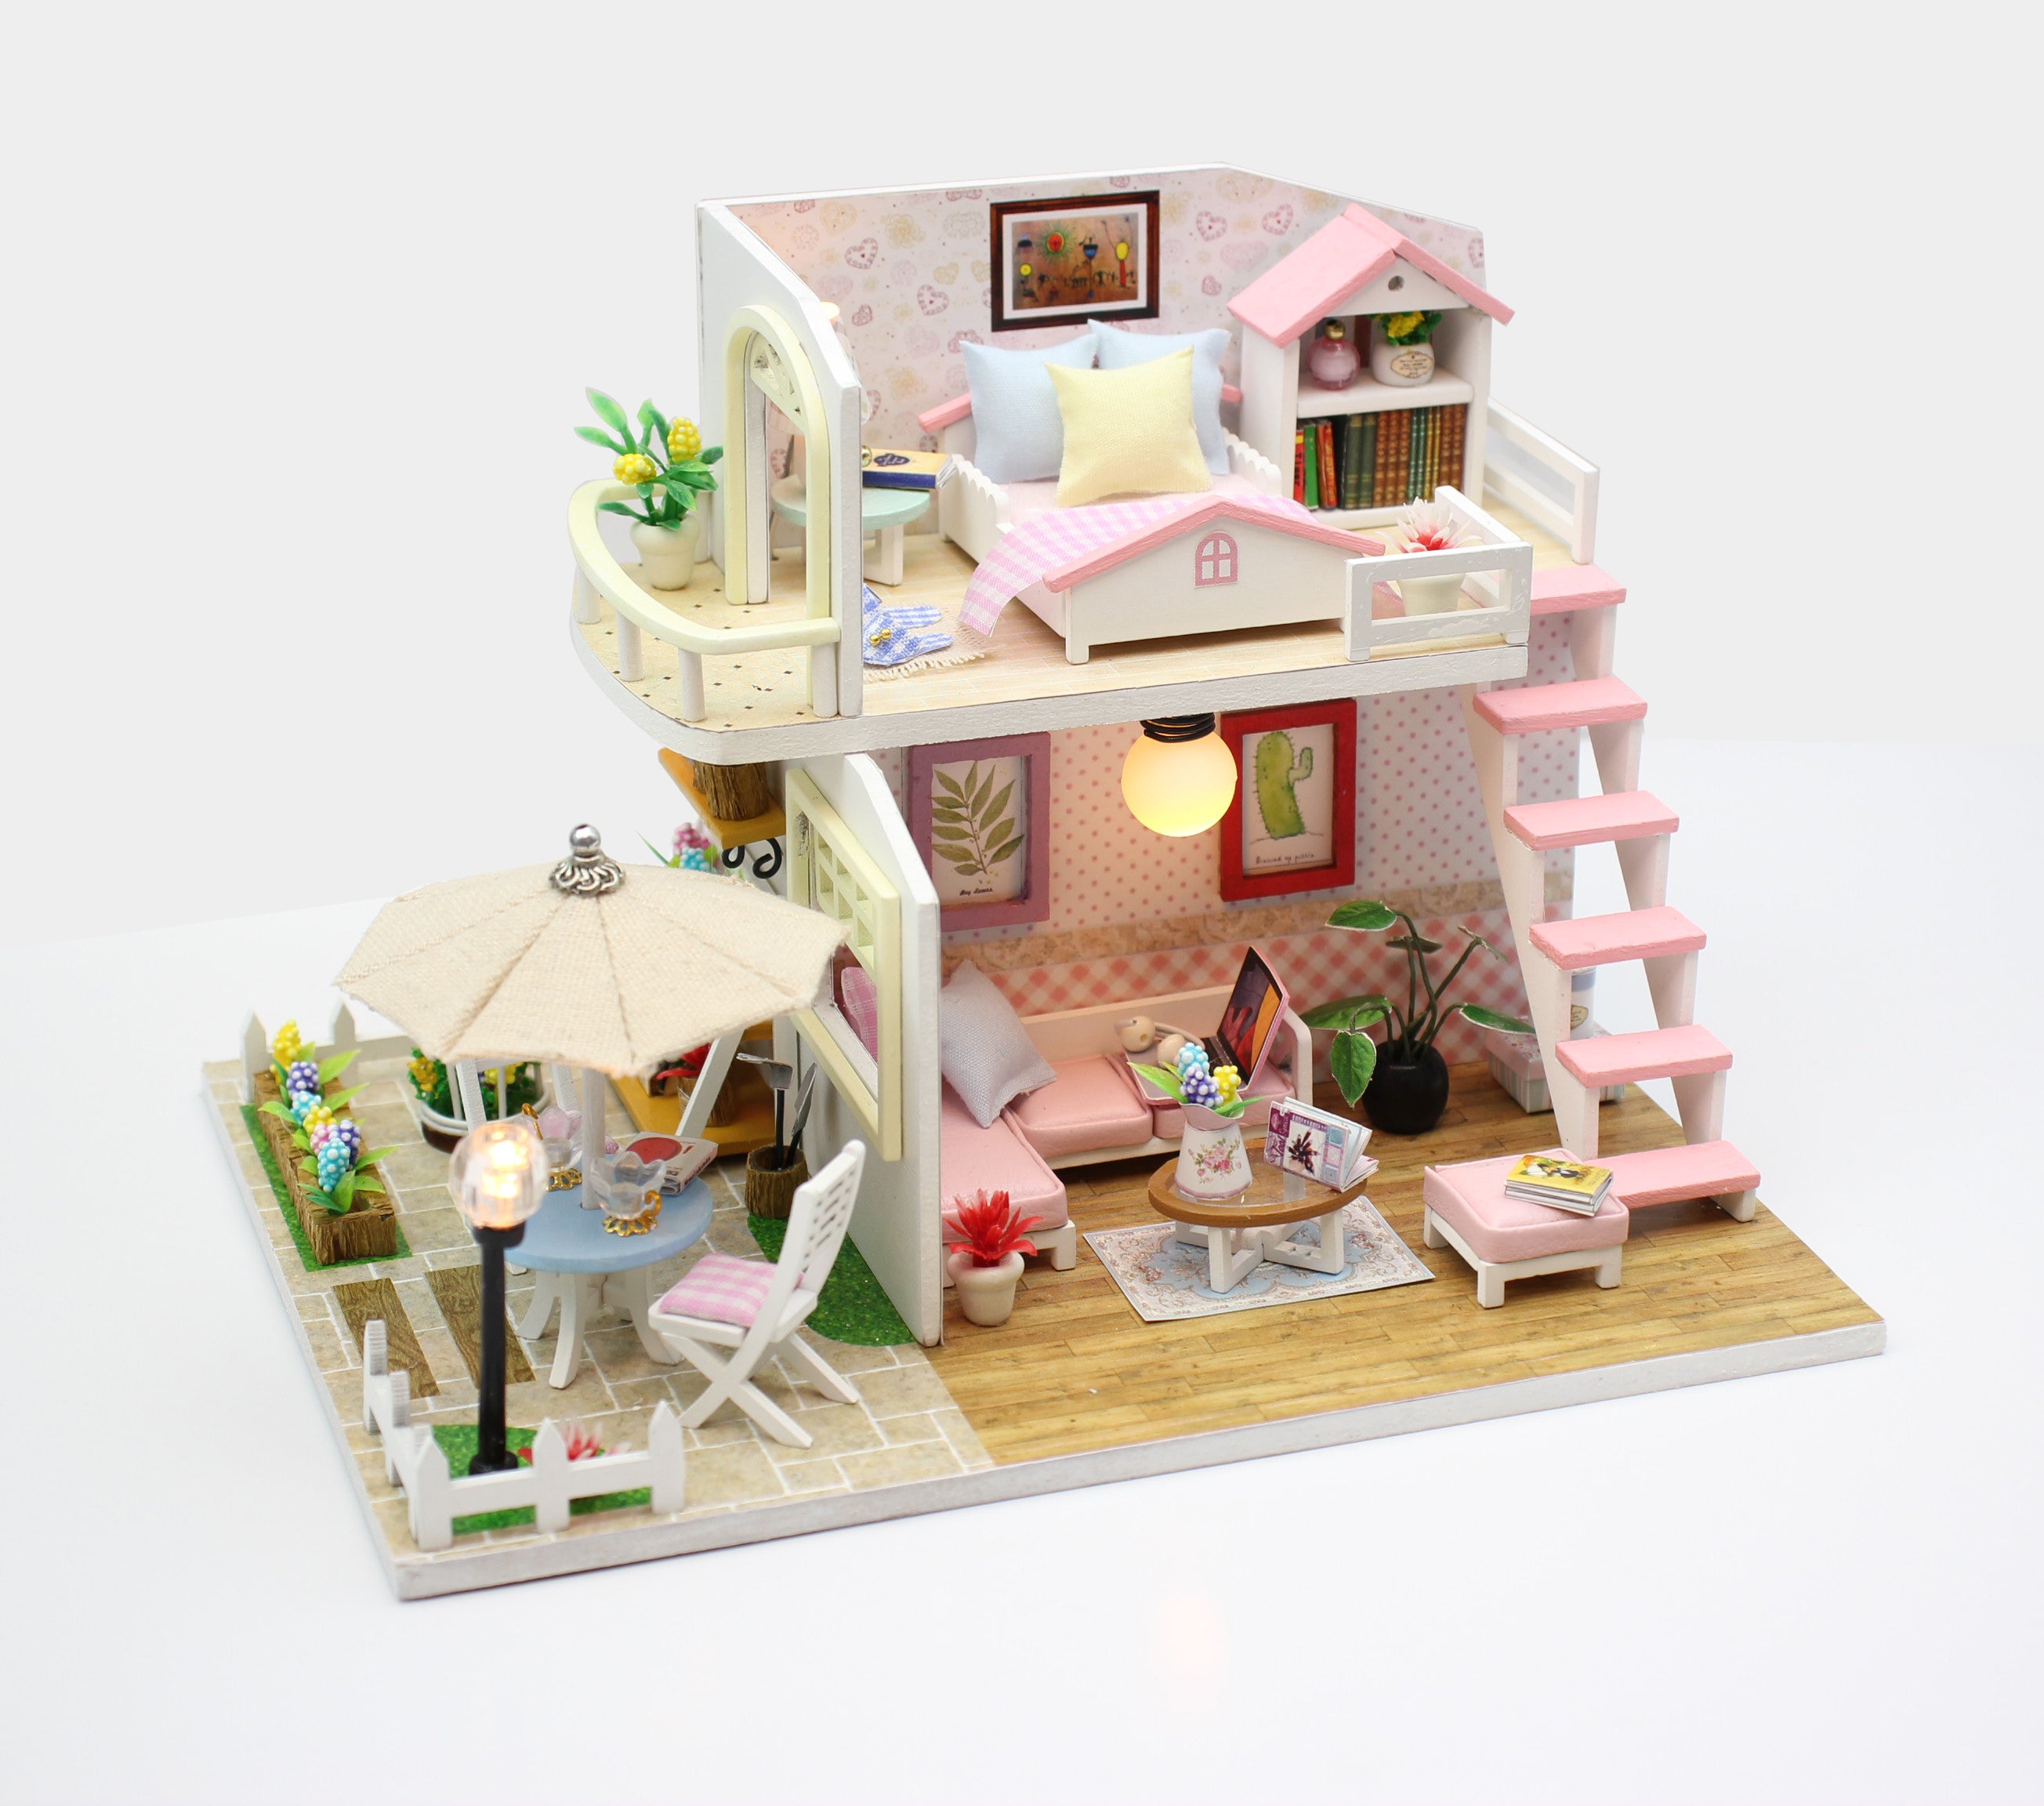 where to buy miniature house kits